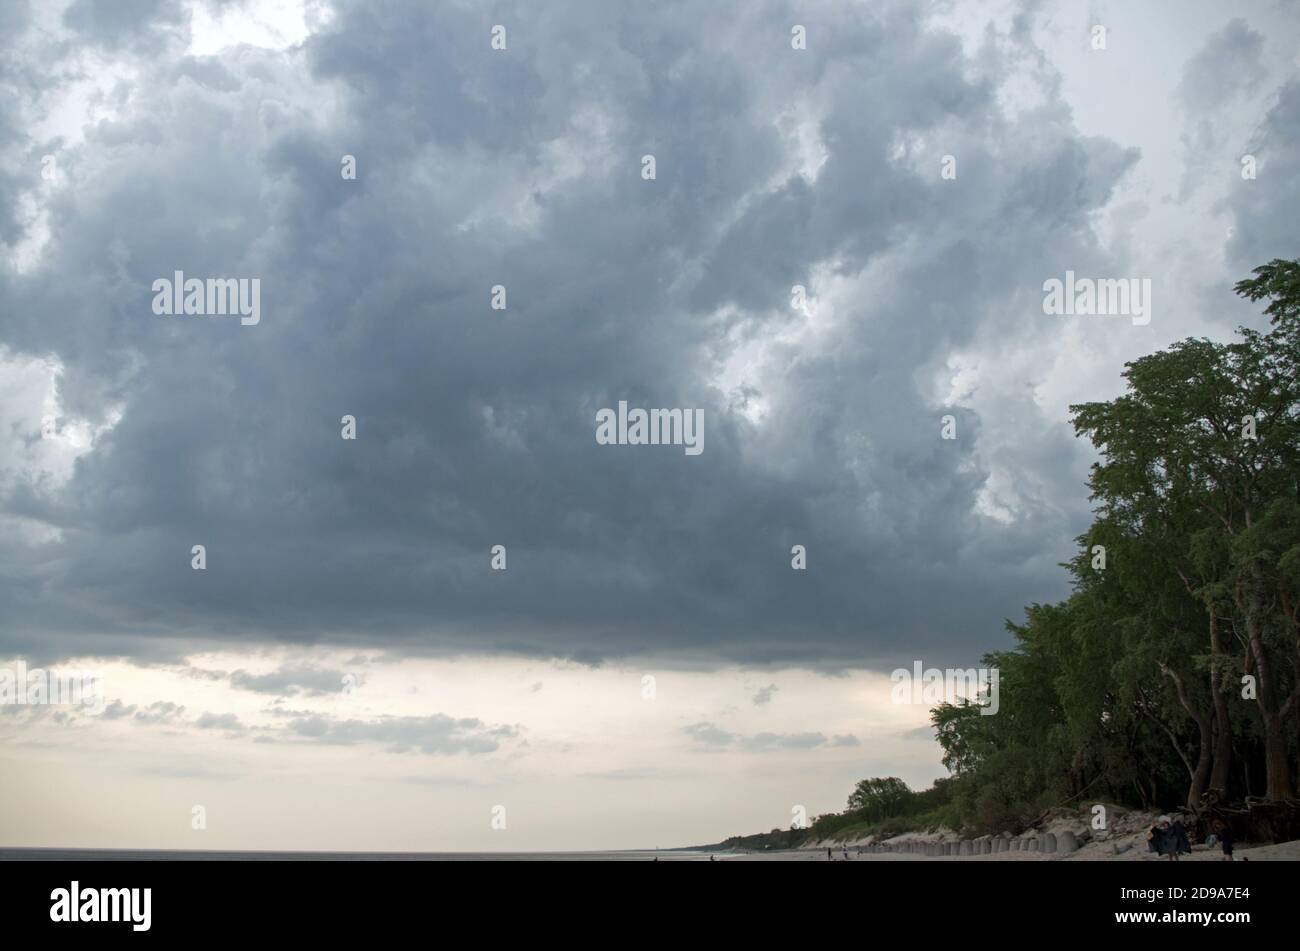 Costa de mar azul oscuro inquieto y los árboles en arena pendiente que se extiende en el horizonte contra el fondo del cielo pre-trueno con nubes pesadas oscuras Foto de stock